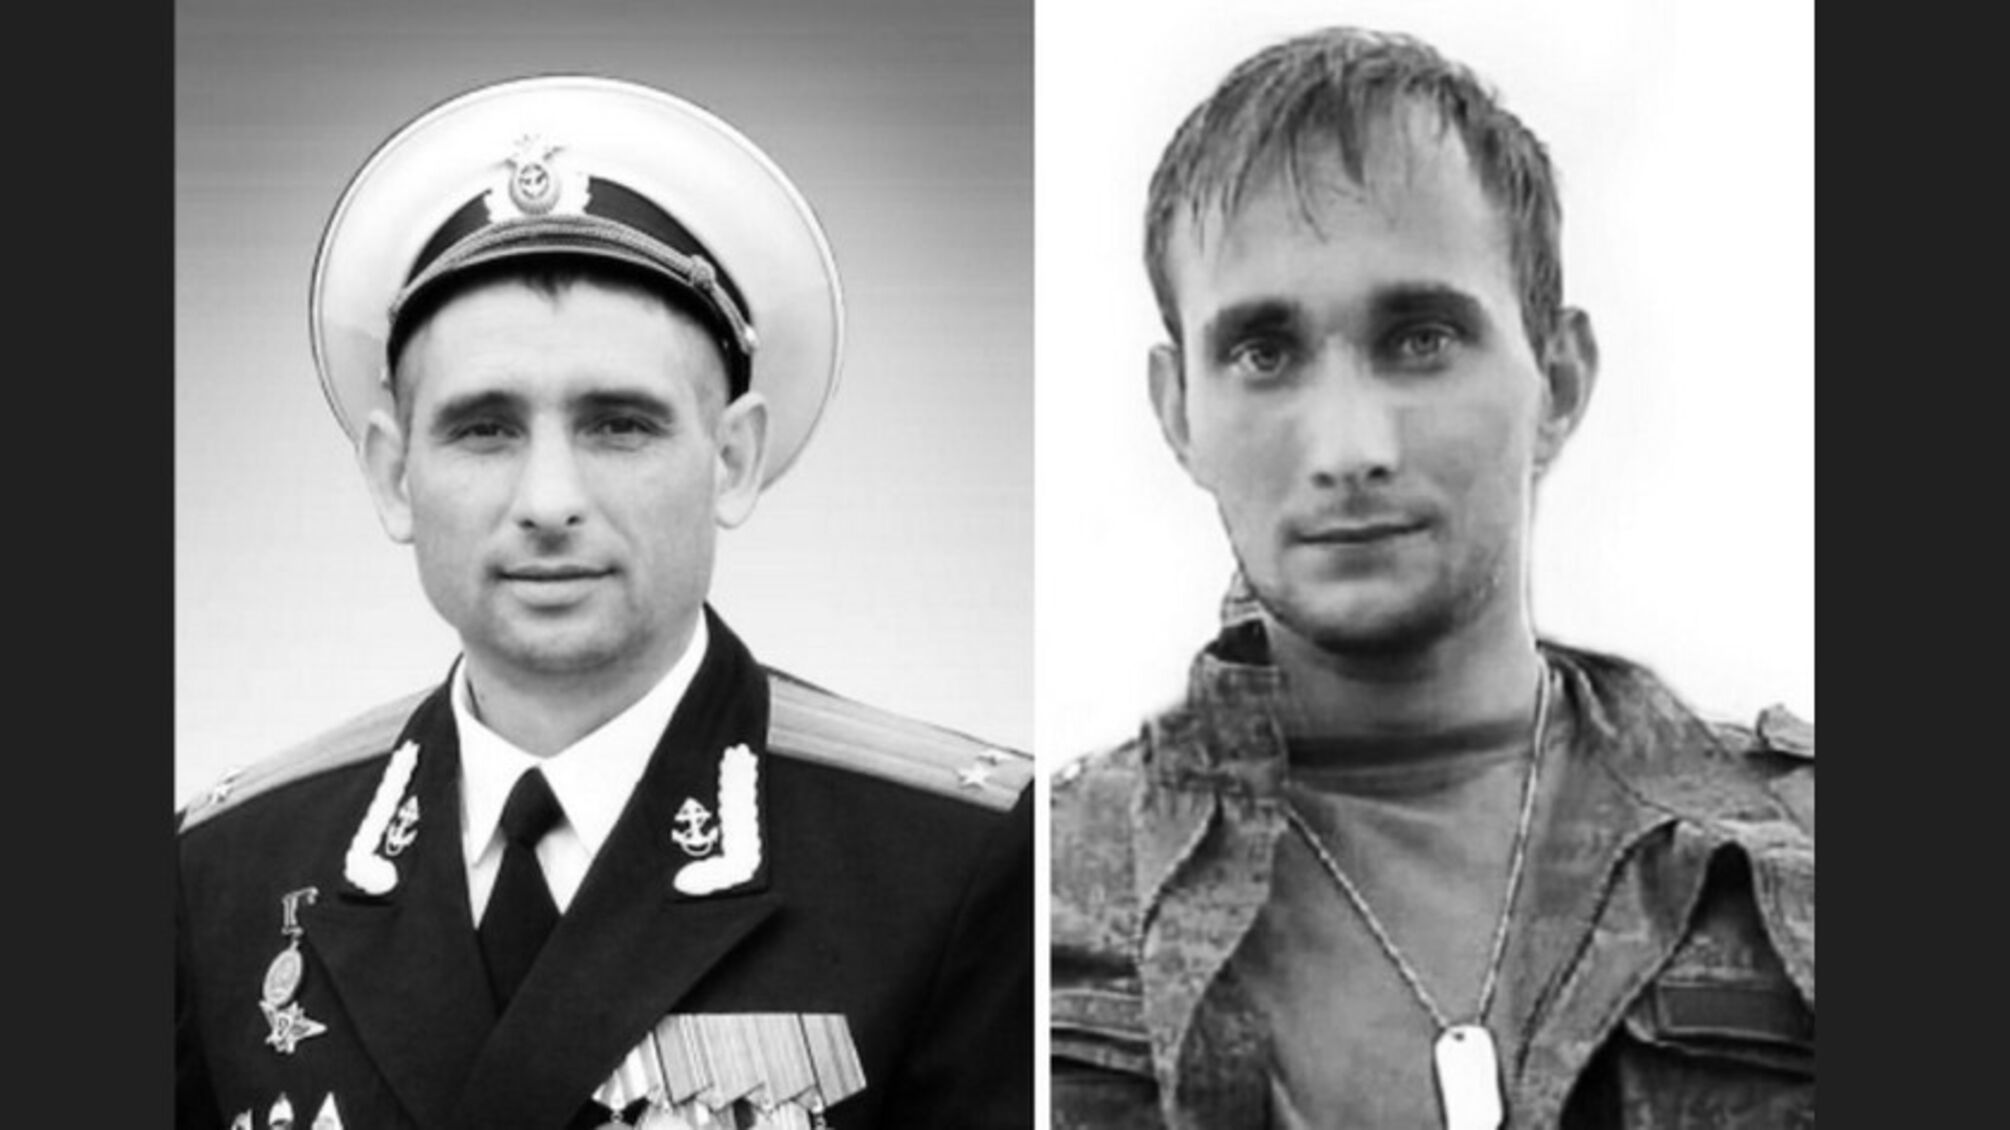 Развожаев подтвердил смерть начштаба 810-й отдельной бригады морской пехоты Черноморского флота РФ